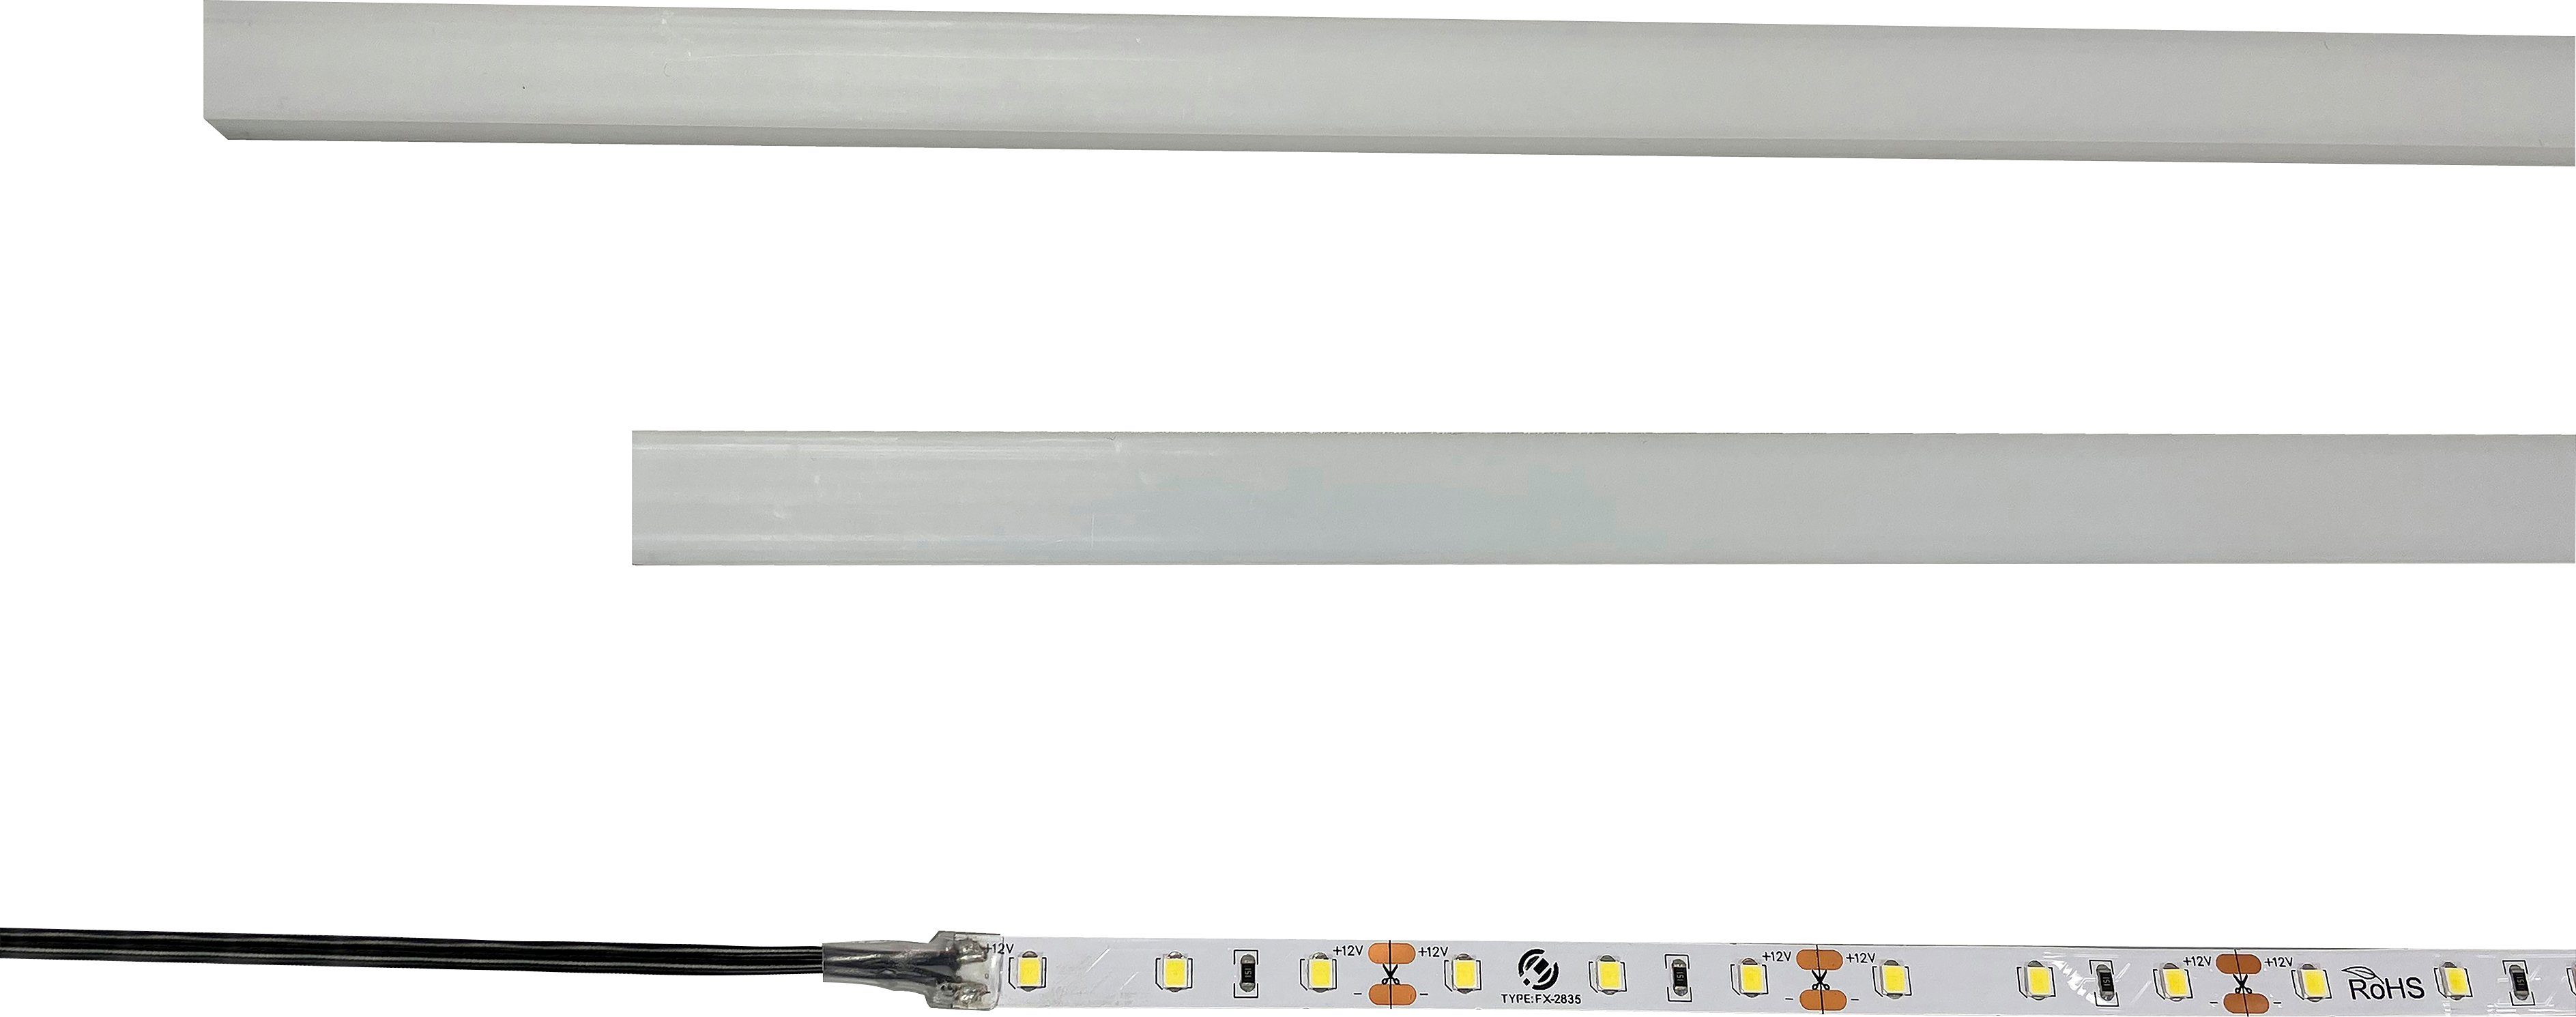 INOSIGN LED Unterbauleuchte LED-Einbauprofile fest Modell universal, für optinonal Kaltweiß, Skoskap Ein-/Ausschalter, integriert, LED